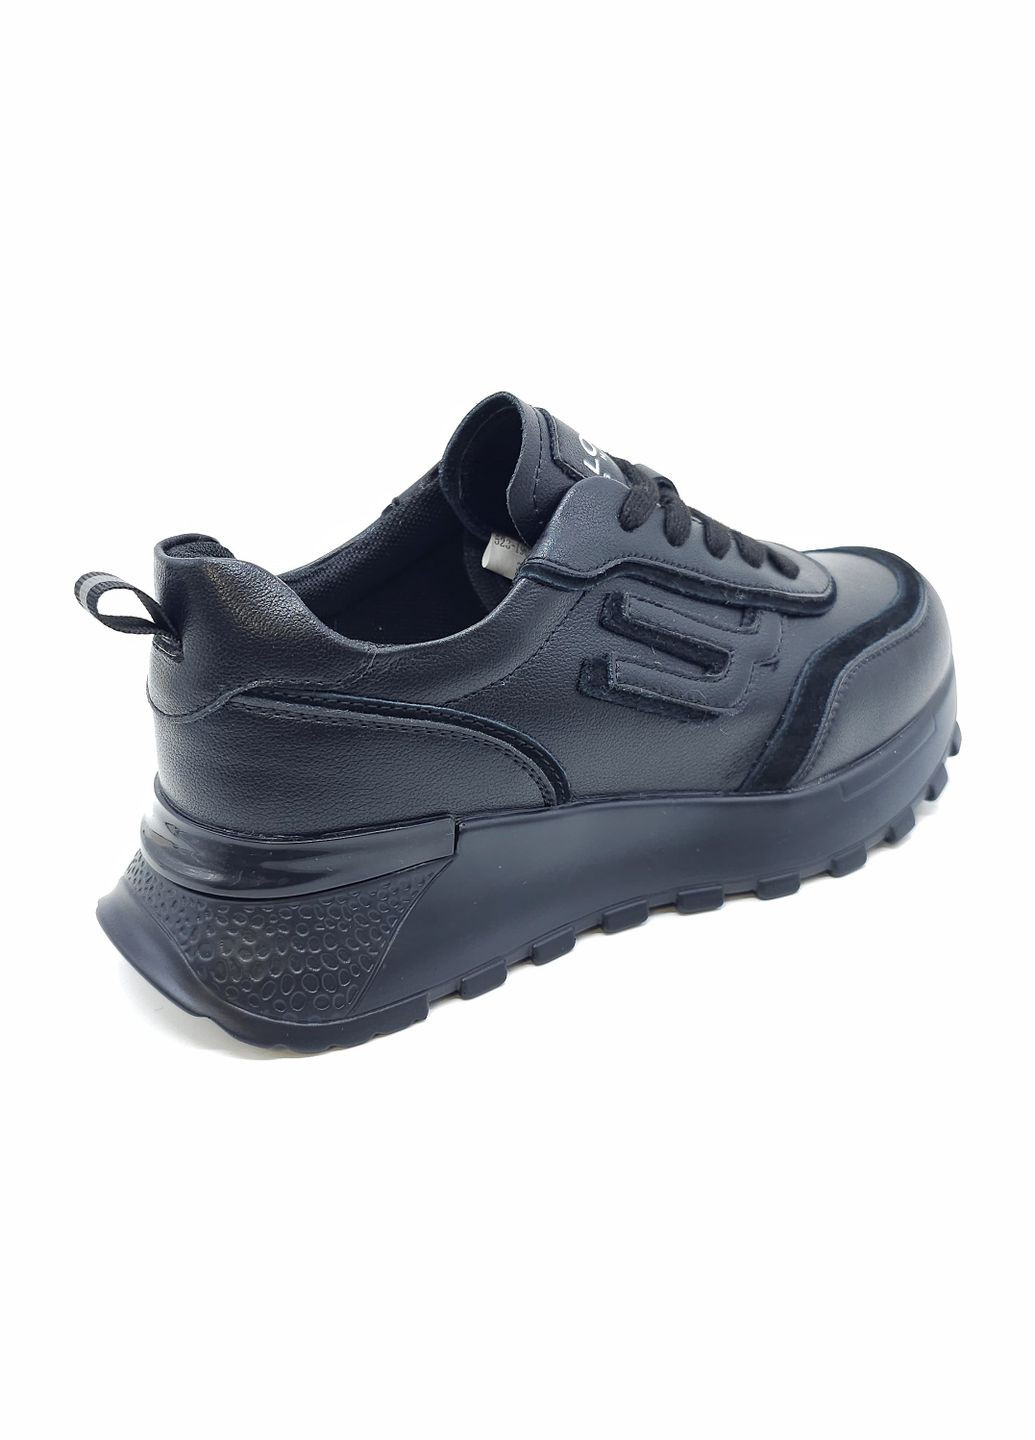 Чорні всесезонні жіночі кросівки чорні шкіряні l-19-12 23,5 см (р) Lonza